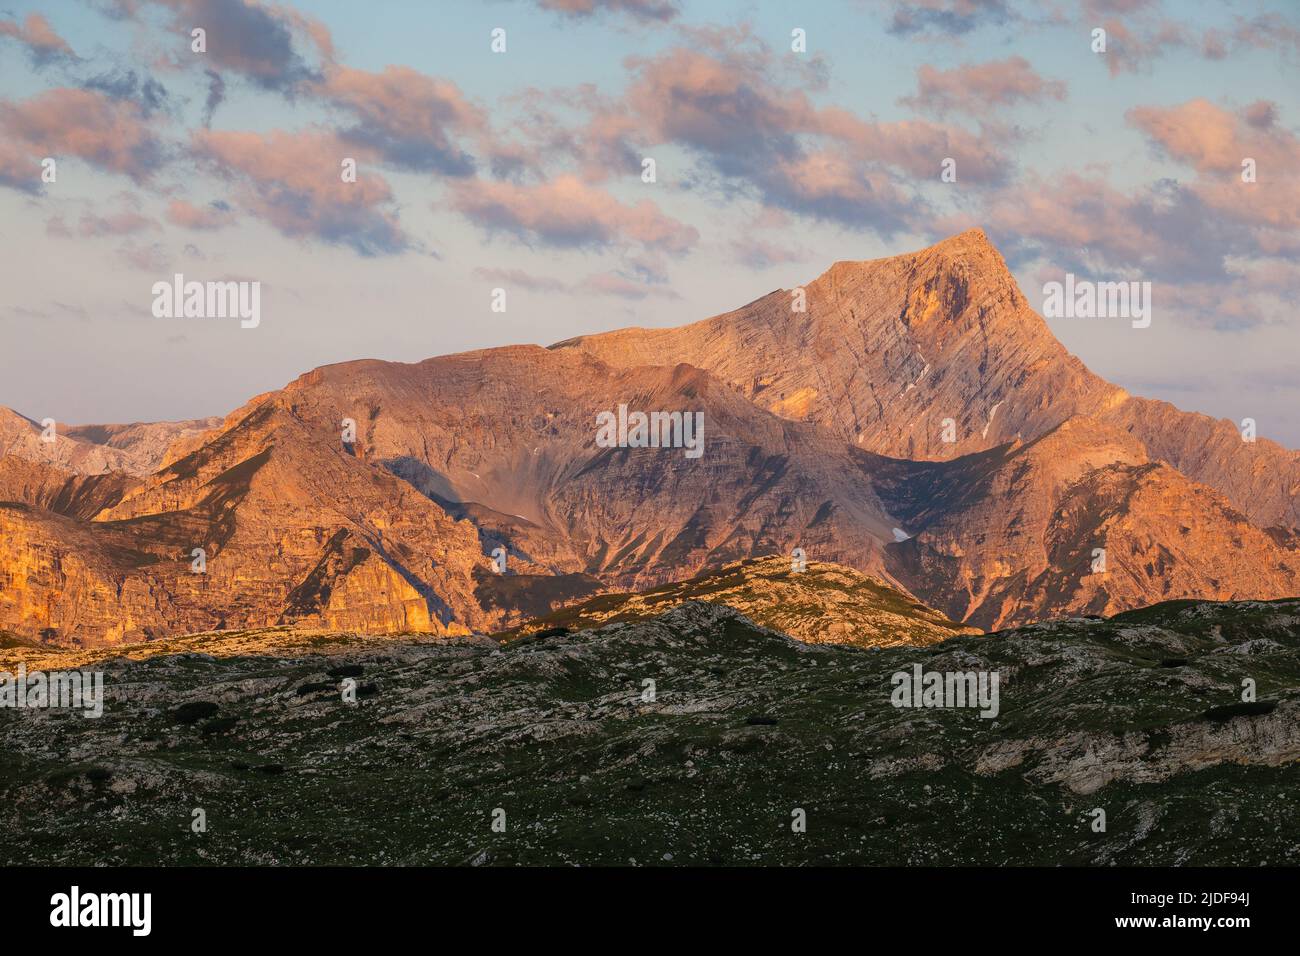 Sasso delle Nove pico de montaña. Alpenglow al amanecer. Los Dolomitas del Parque Natural de Fanes-Senes-Braies. Alpes italianos. Europa. Foto de stock